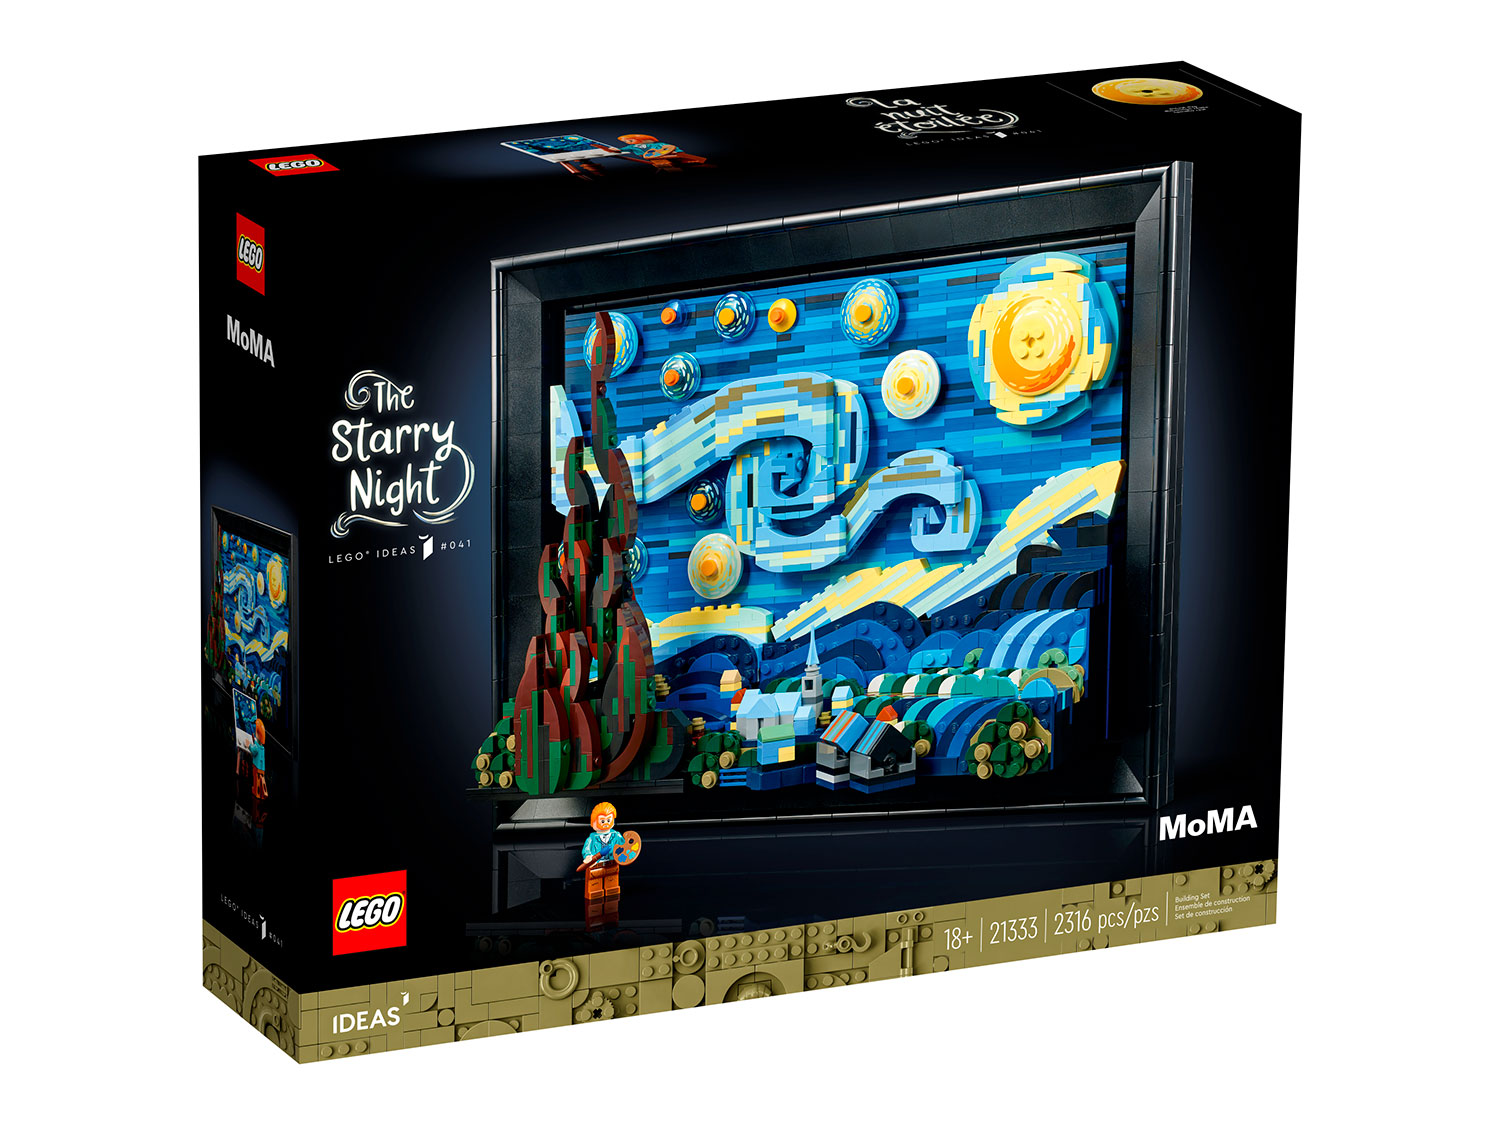 Конструктор LEGO Ideas 21333 - Винсент Ван Гог - Звездная ночь sketchbook винсент ван гог звездная ночь 96 стр